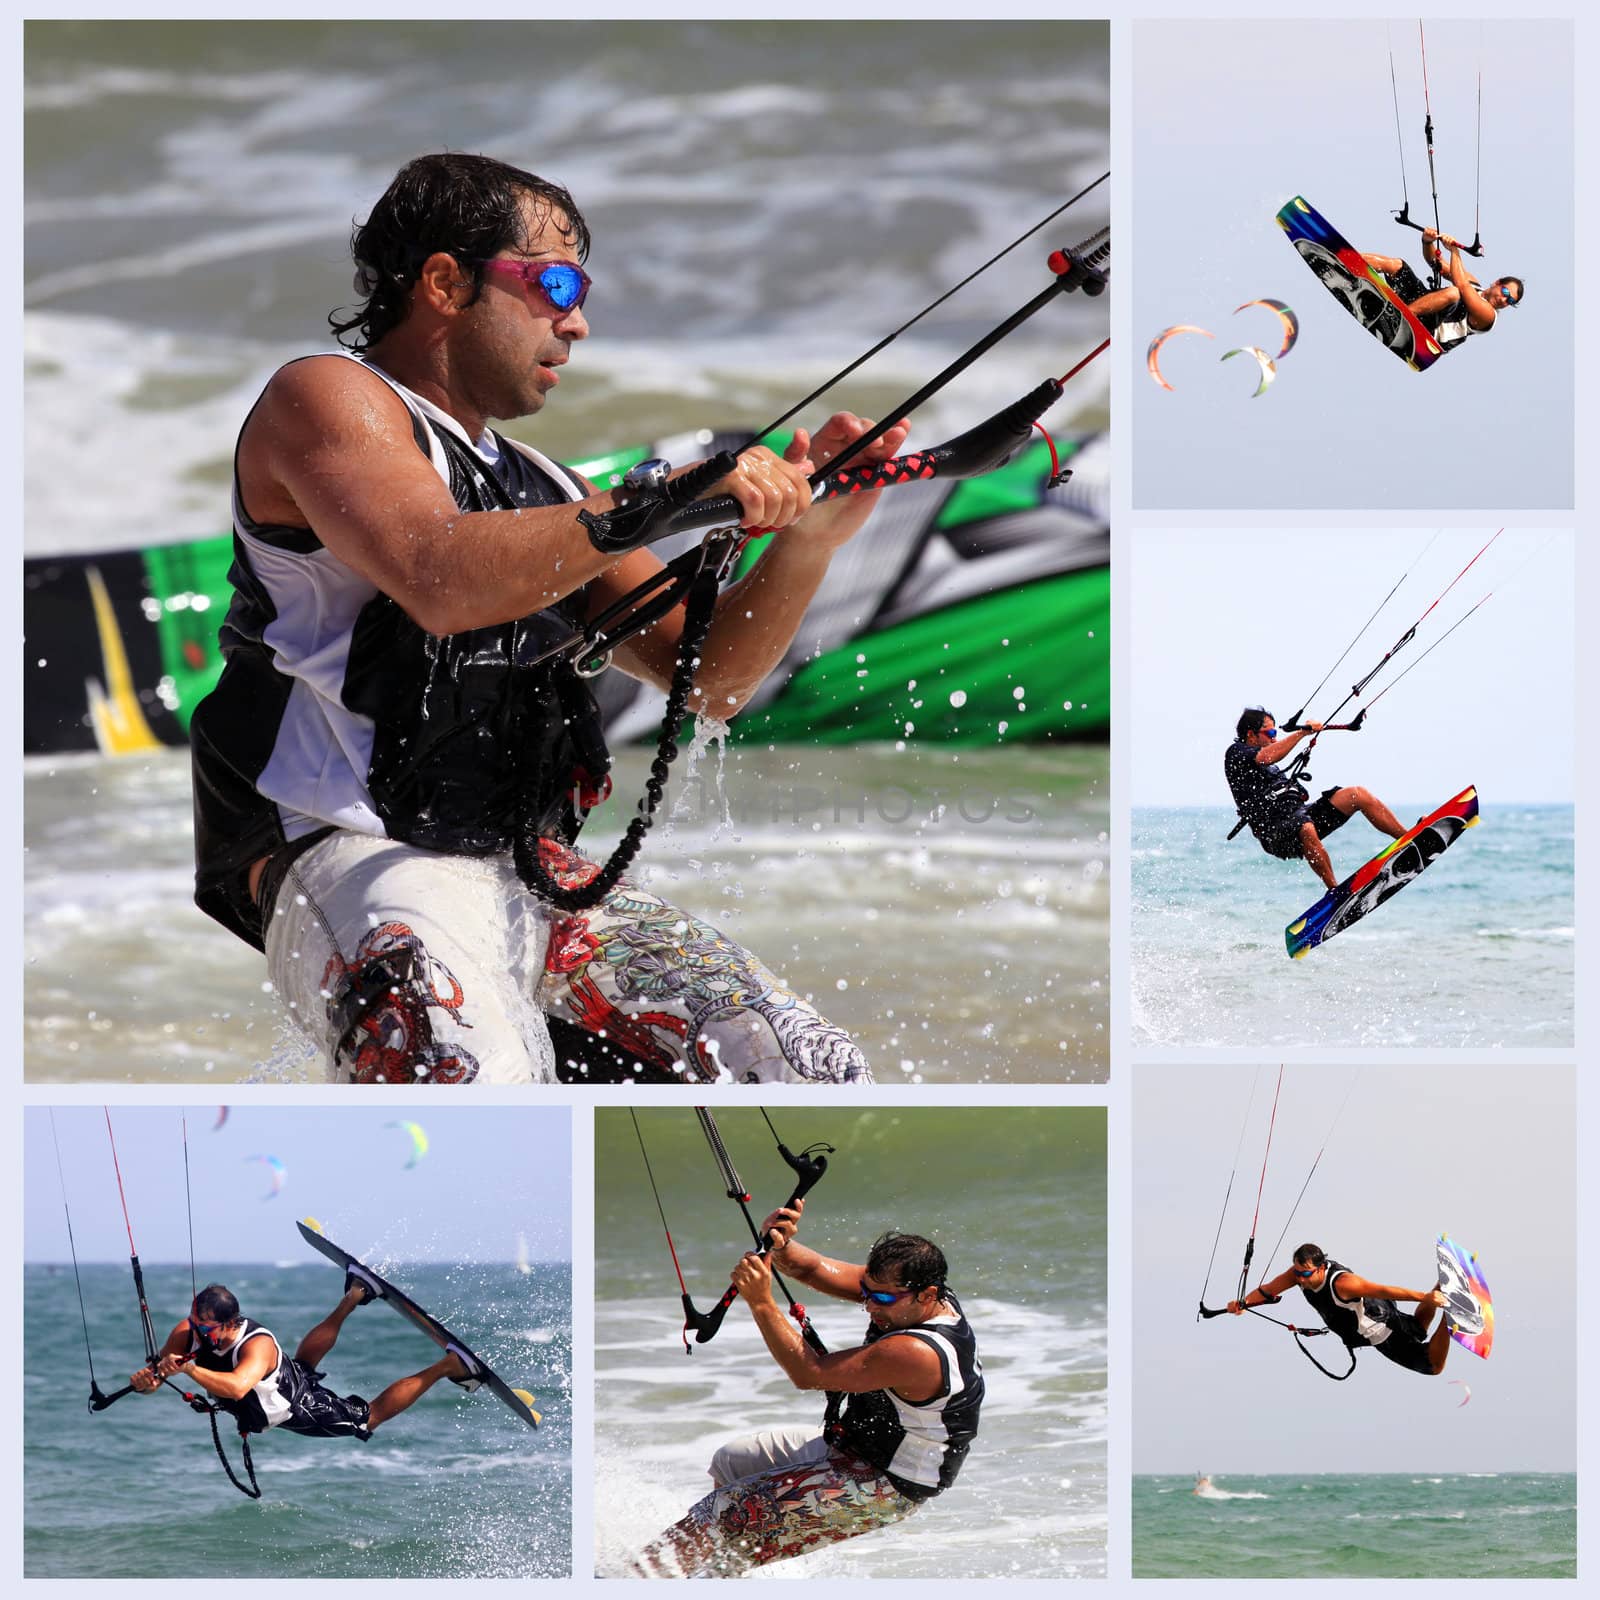 Collage from 6 photos kiteboarder enjoy surfing in water. Vietnam